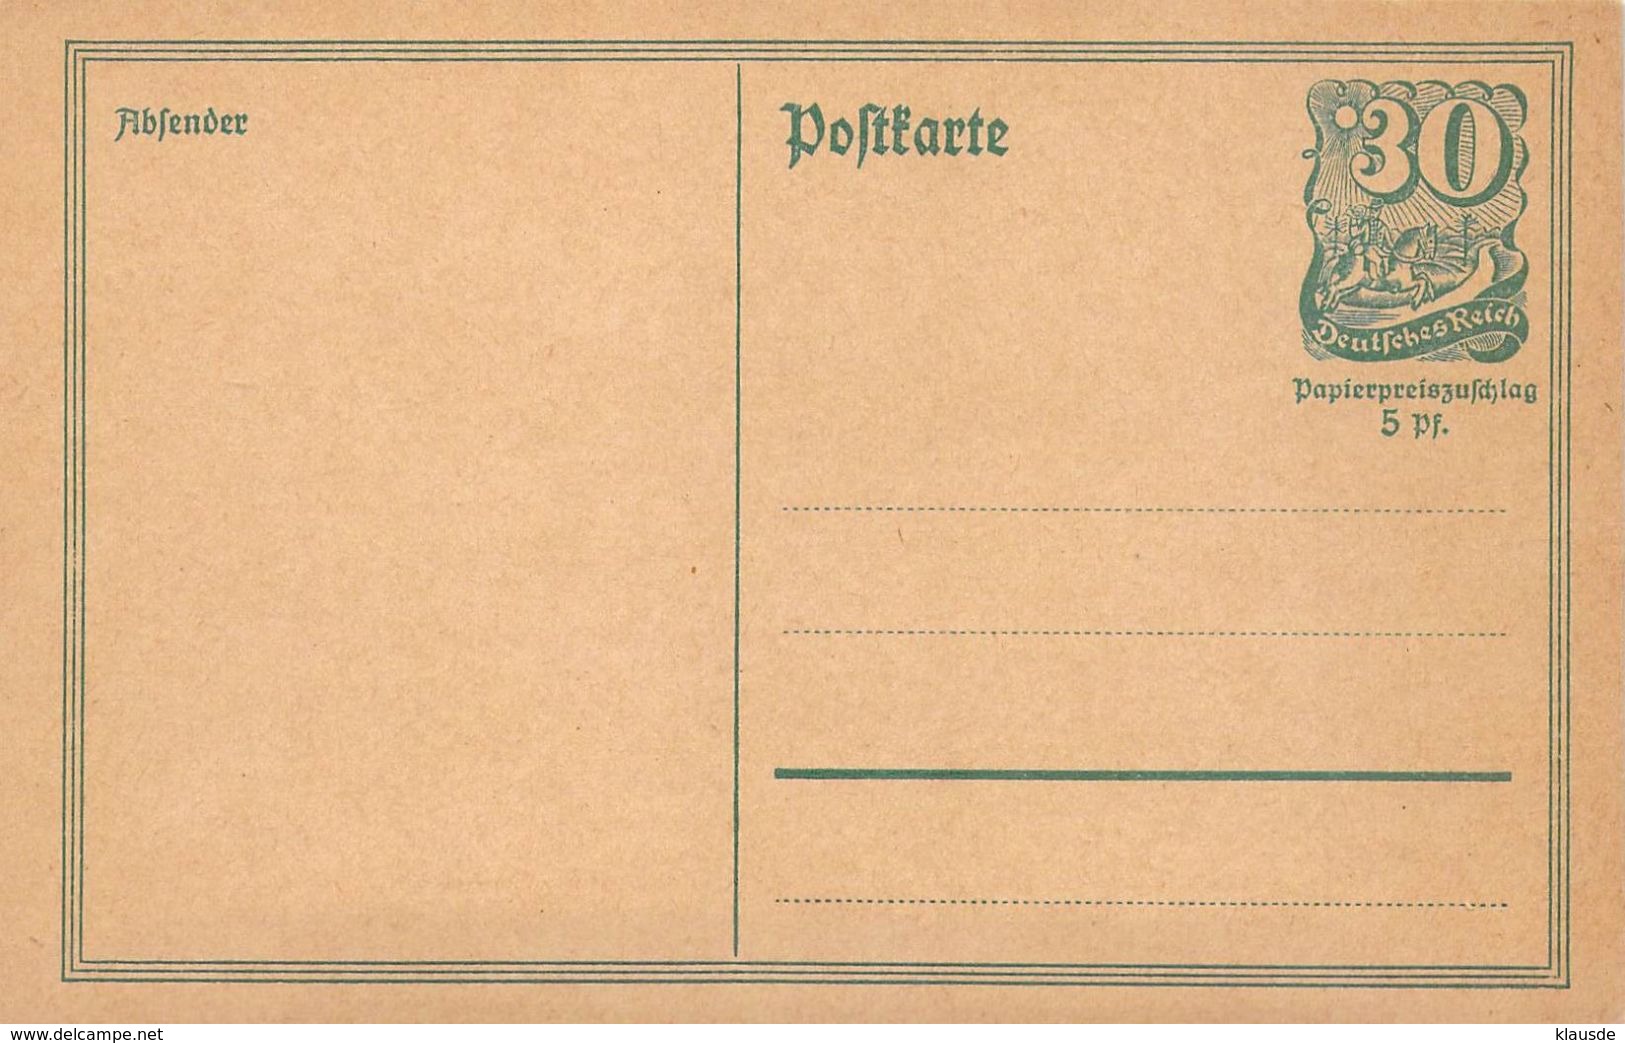 P140 Deutschland Deutsches Reich - Cartes Postales